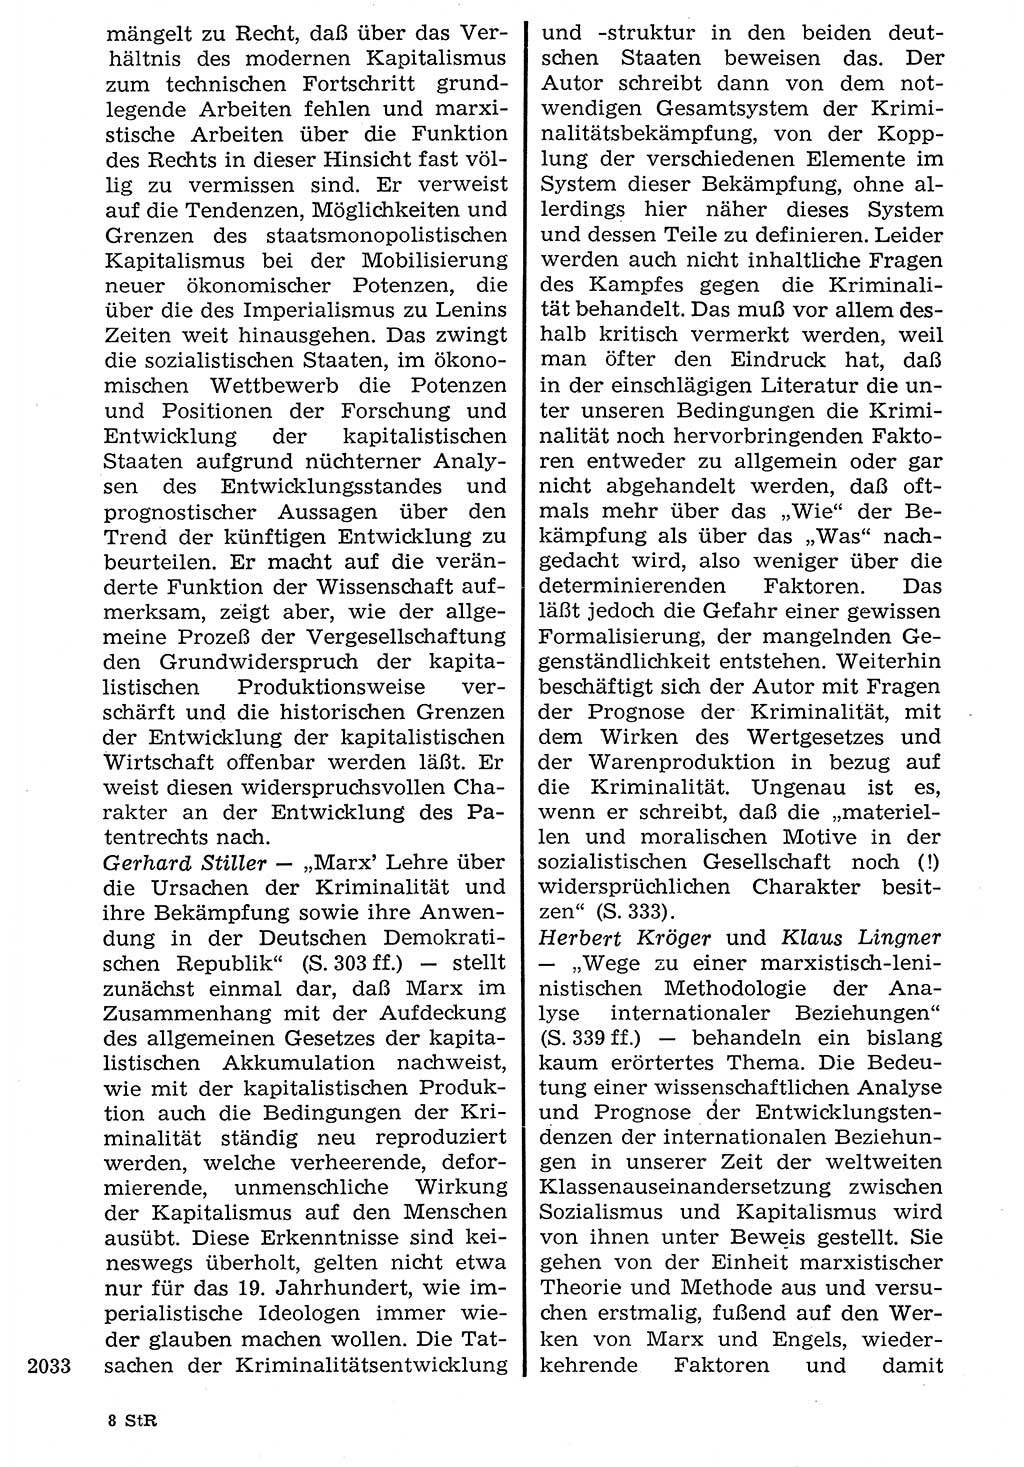 Staat und Recht (StuR), 17. Jahrgang [Deutsche Demokratische Republik (DDR)] 1968, Seite 2033 (StuR DDR 1968, S. 2033)